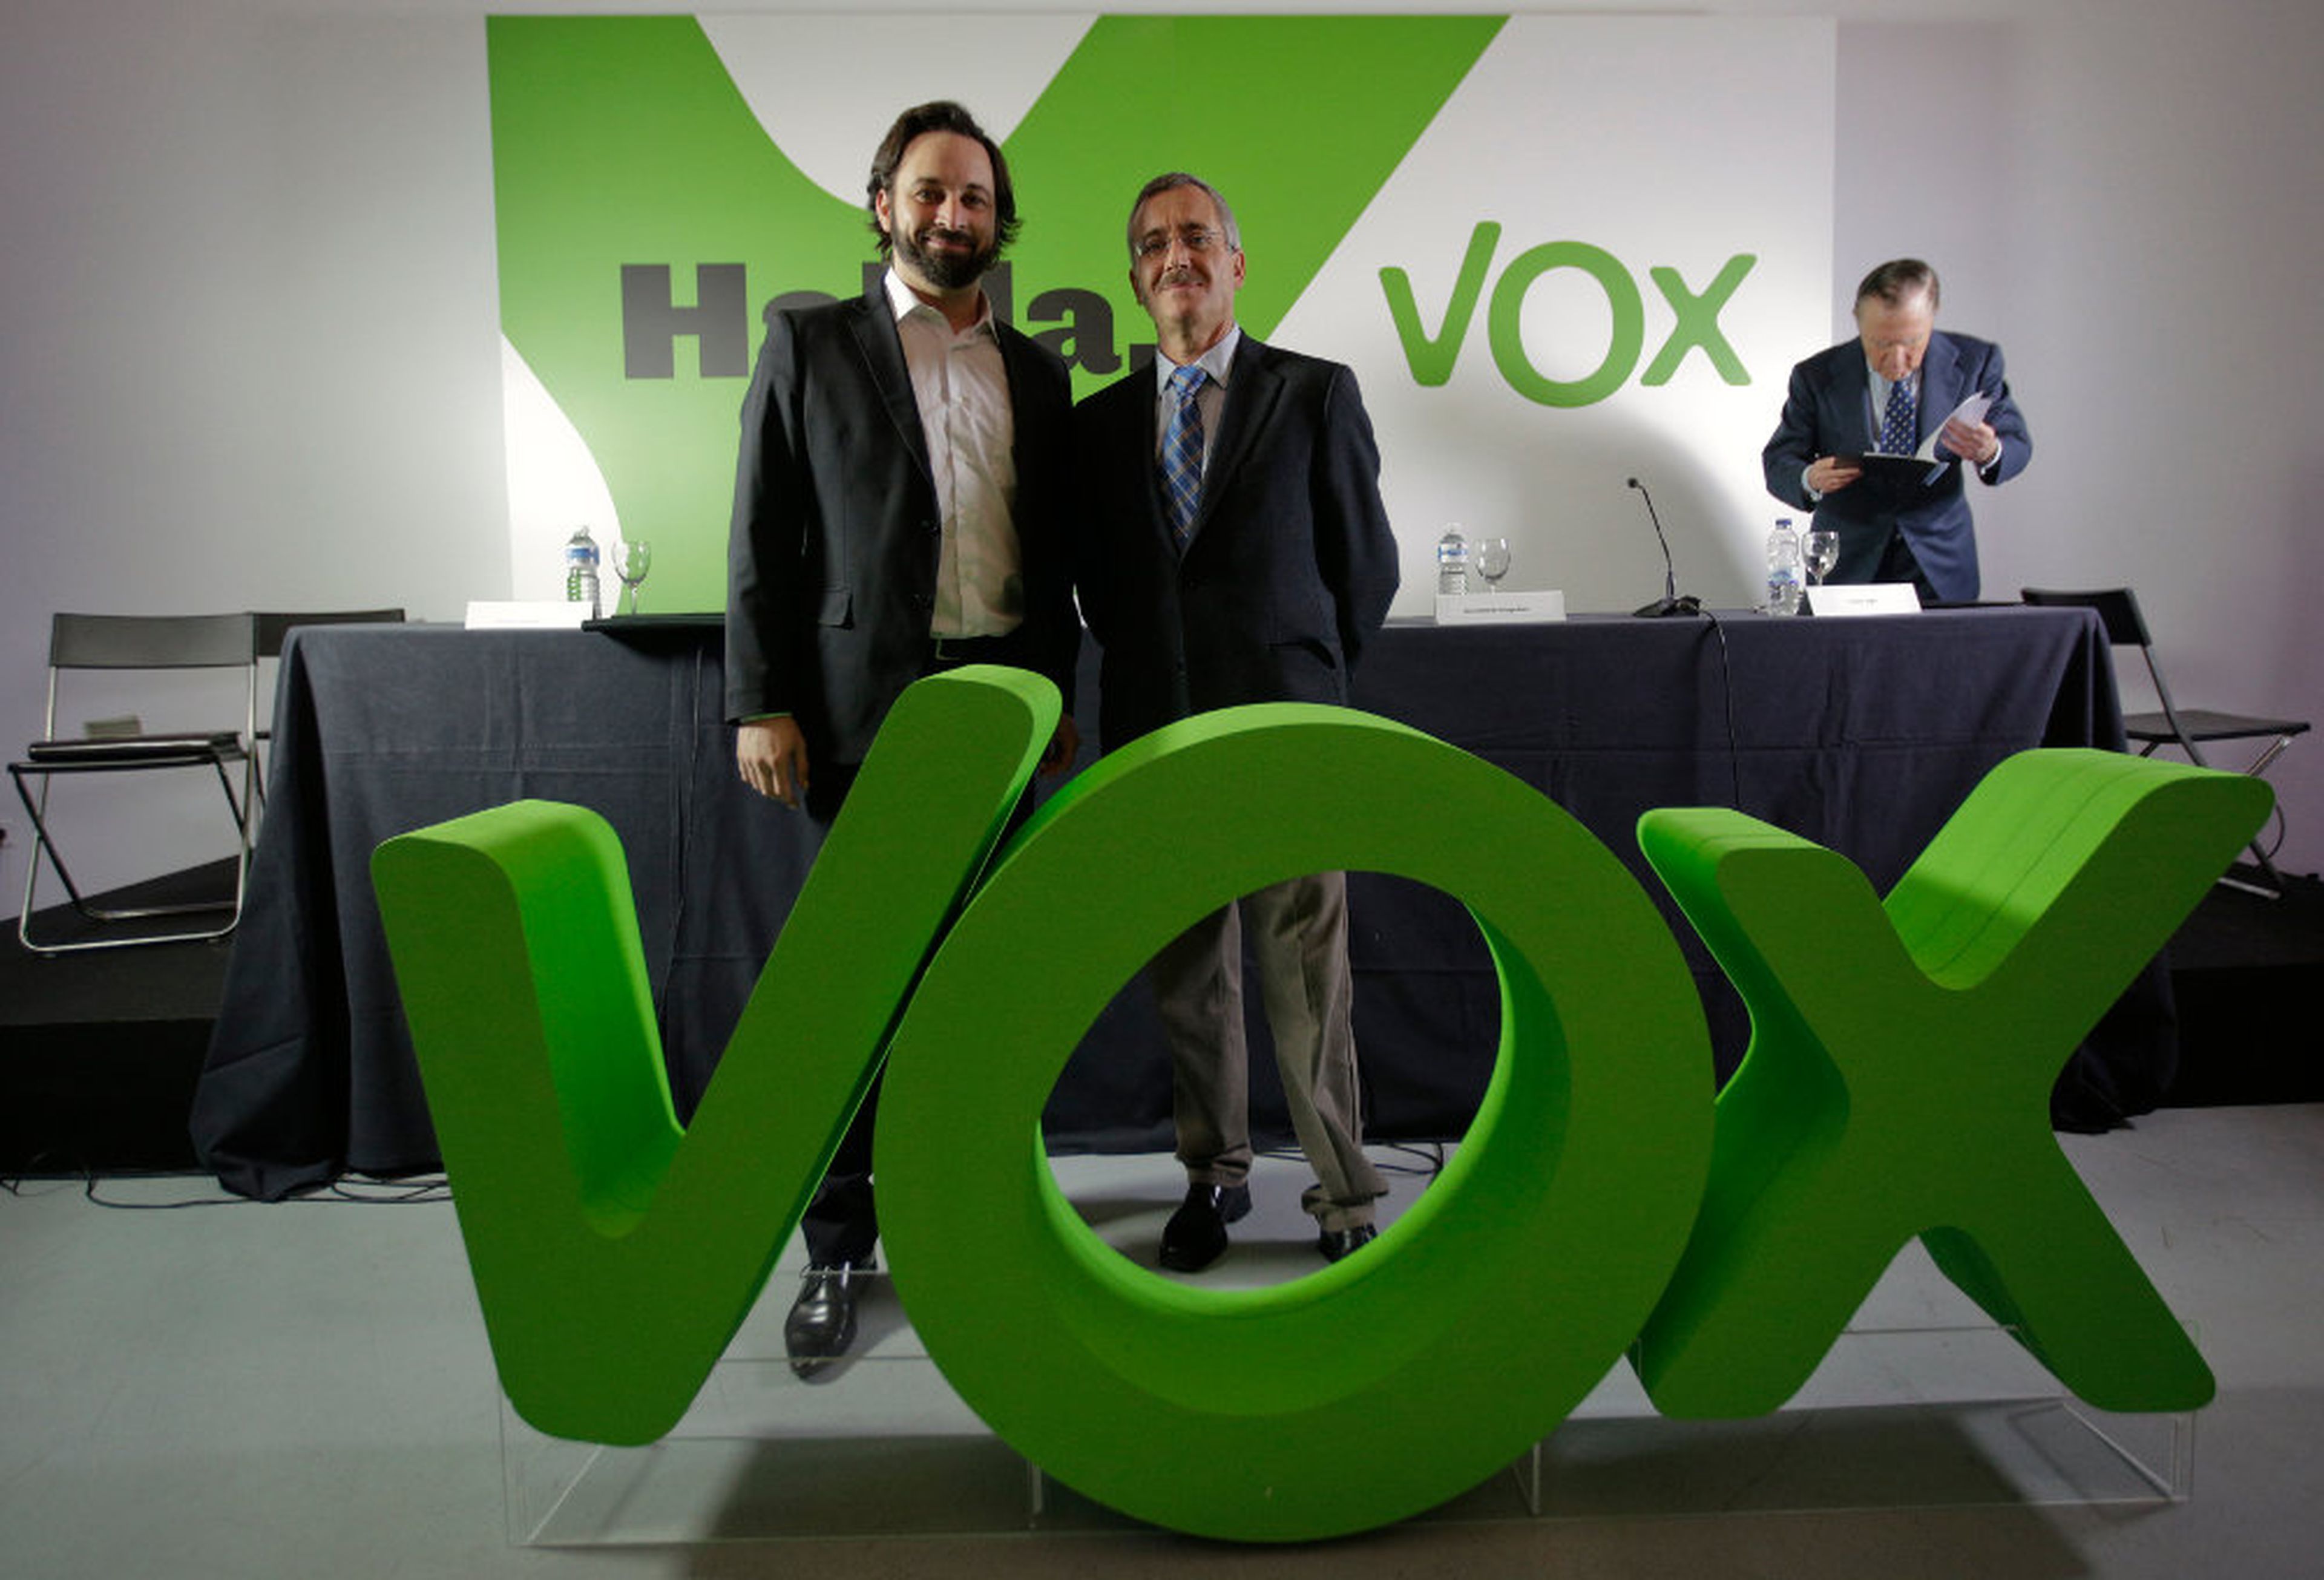 Santiago Abascal posa junto a J. Antonio Orteha Lara el día de la presentación de VOX, el 16 de enero de 2014.